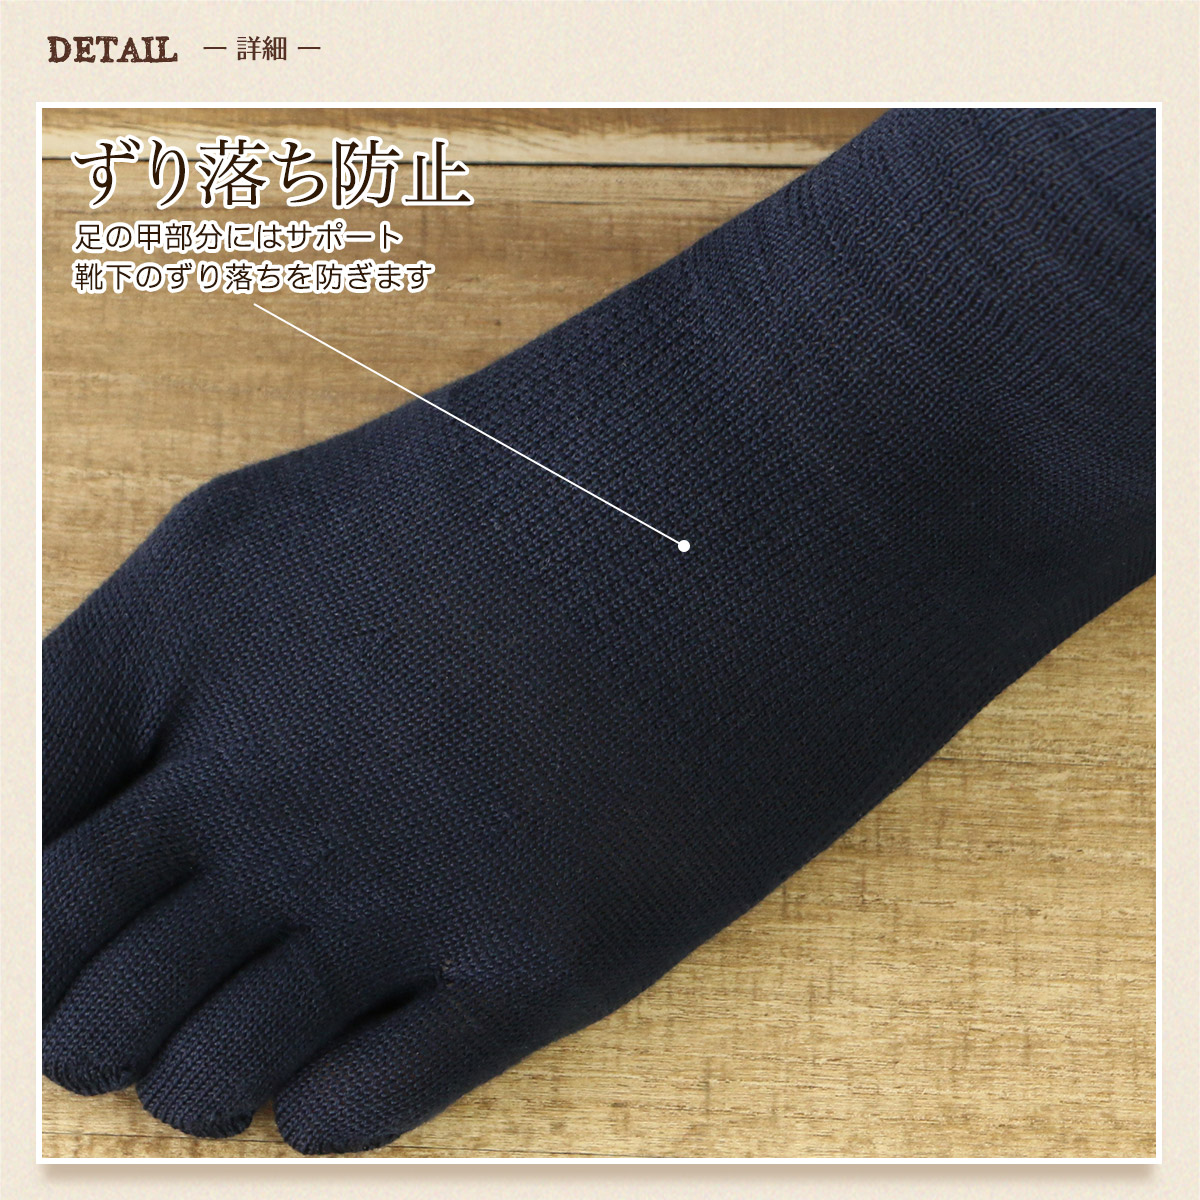 日本製 綿100% 5本指 親指セパレート ホールガーメント クルー丈 メンズ 無地 ソックス